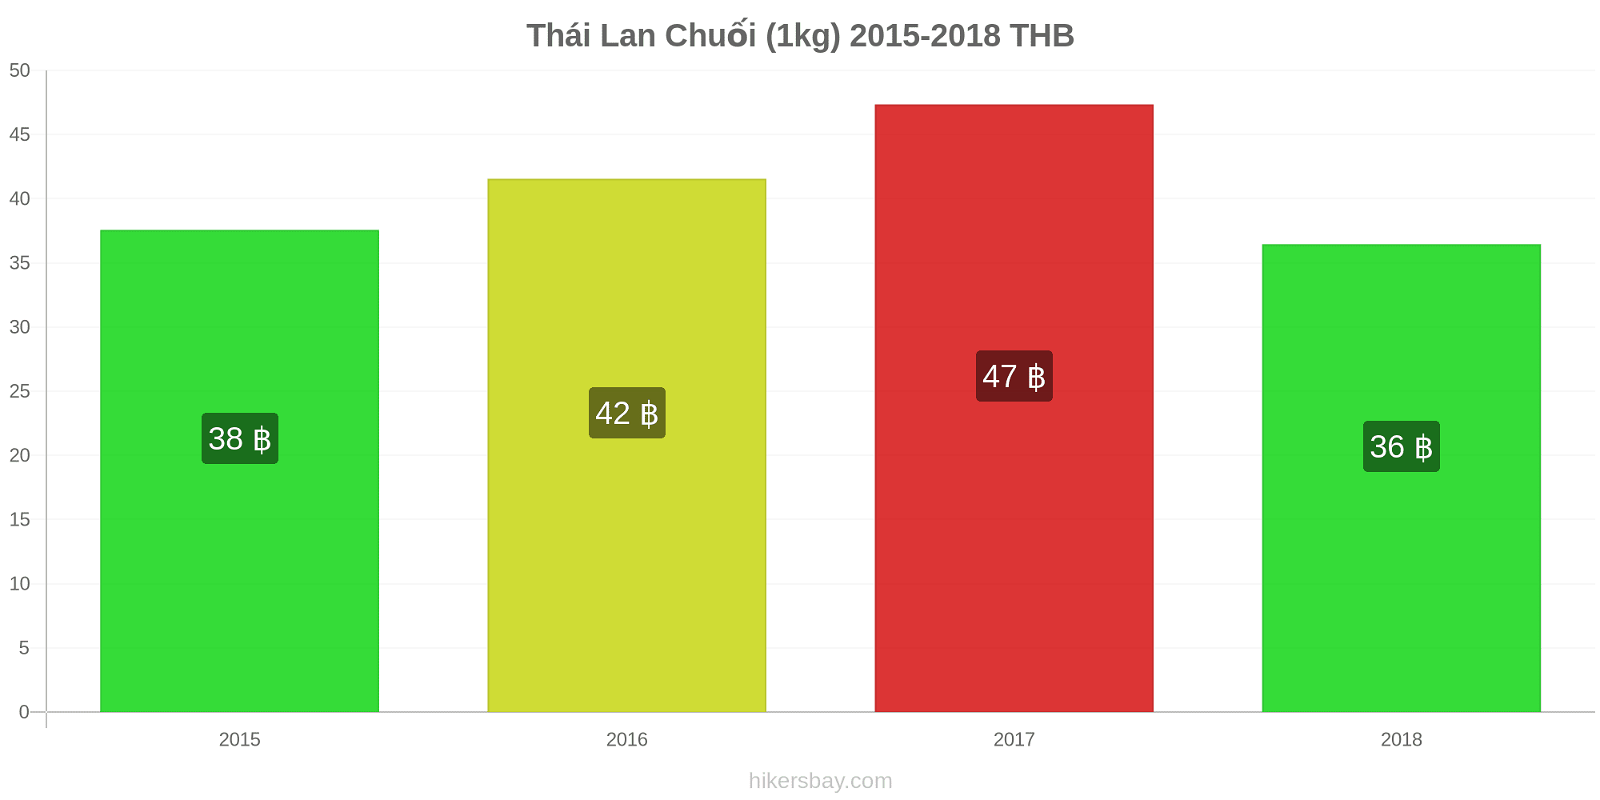 Thái Lan thay đổi giá cả Chuối (1kg) hikersbay.com